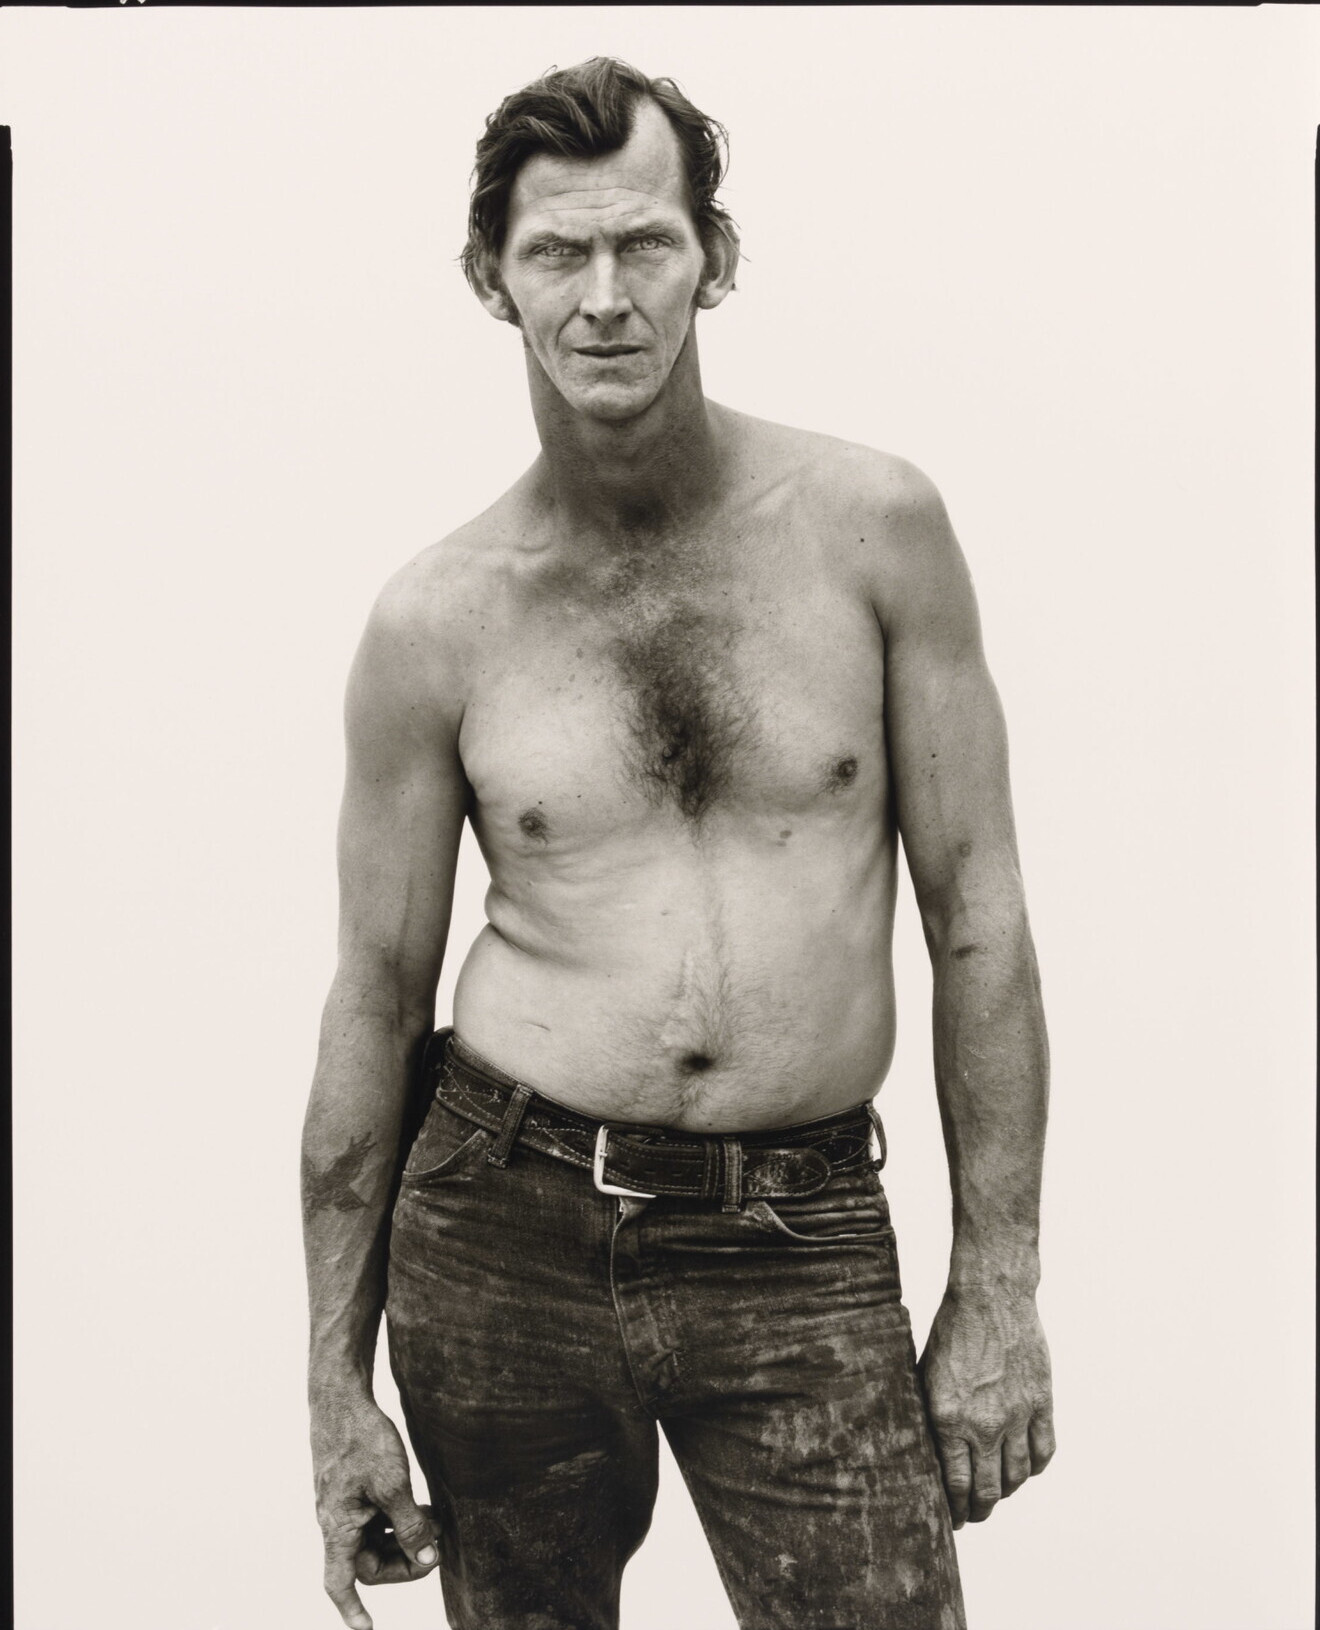 Билли Мадд, дальнобойщик, Альто, Техас, 1981. Фотограф Ричард Аведон